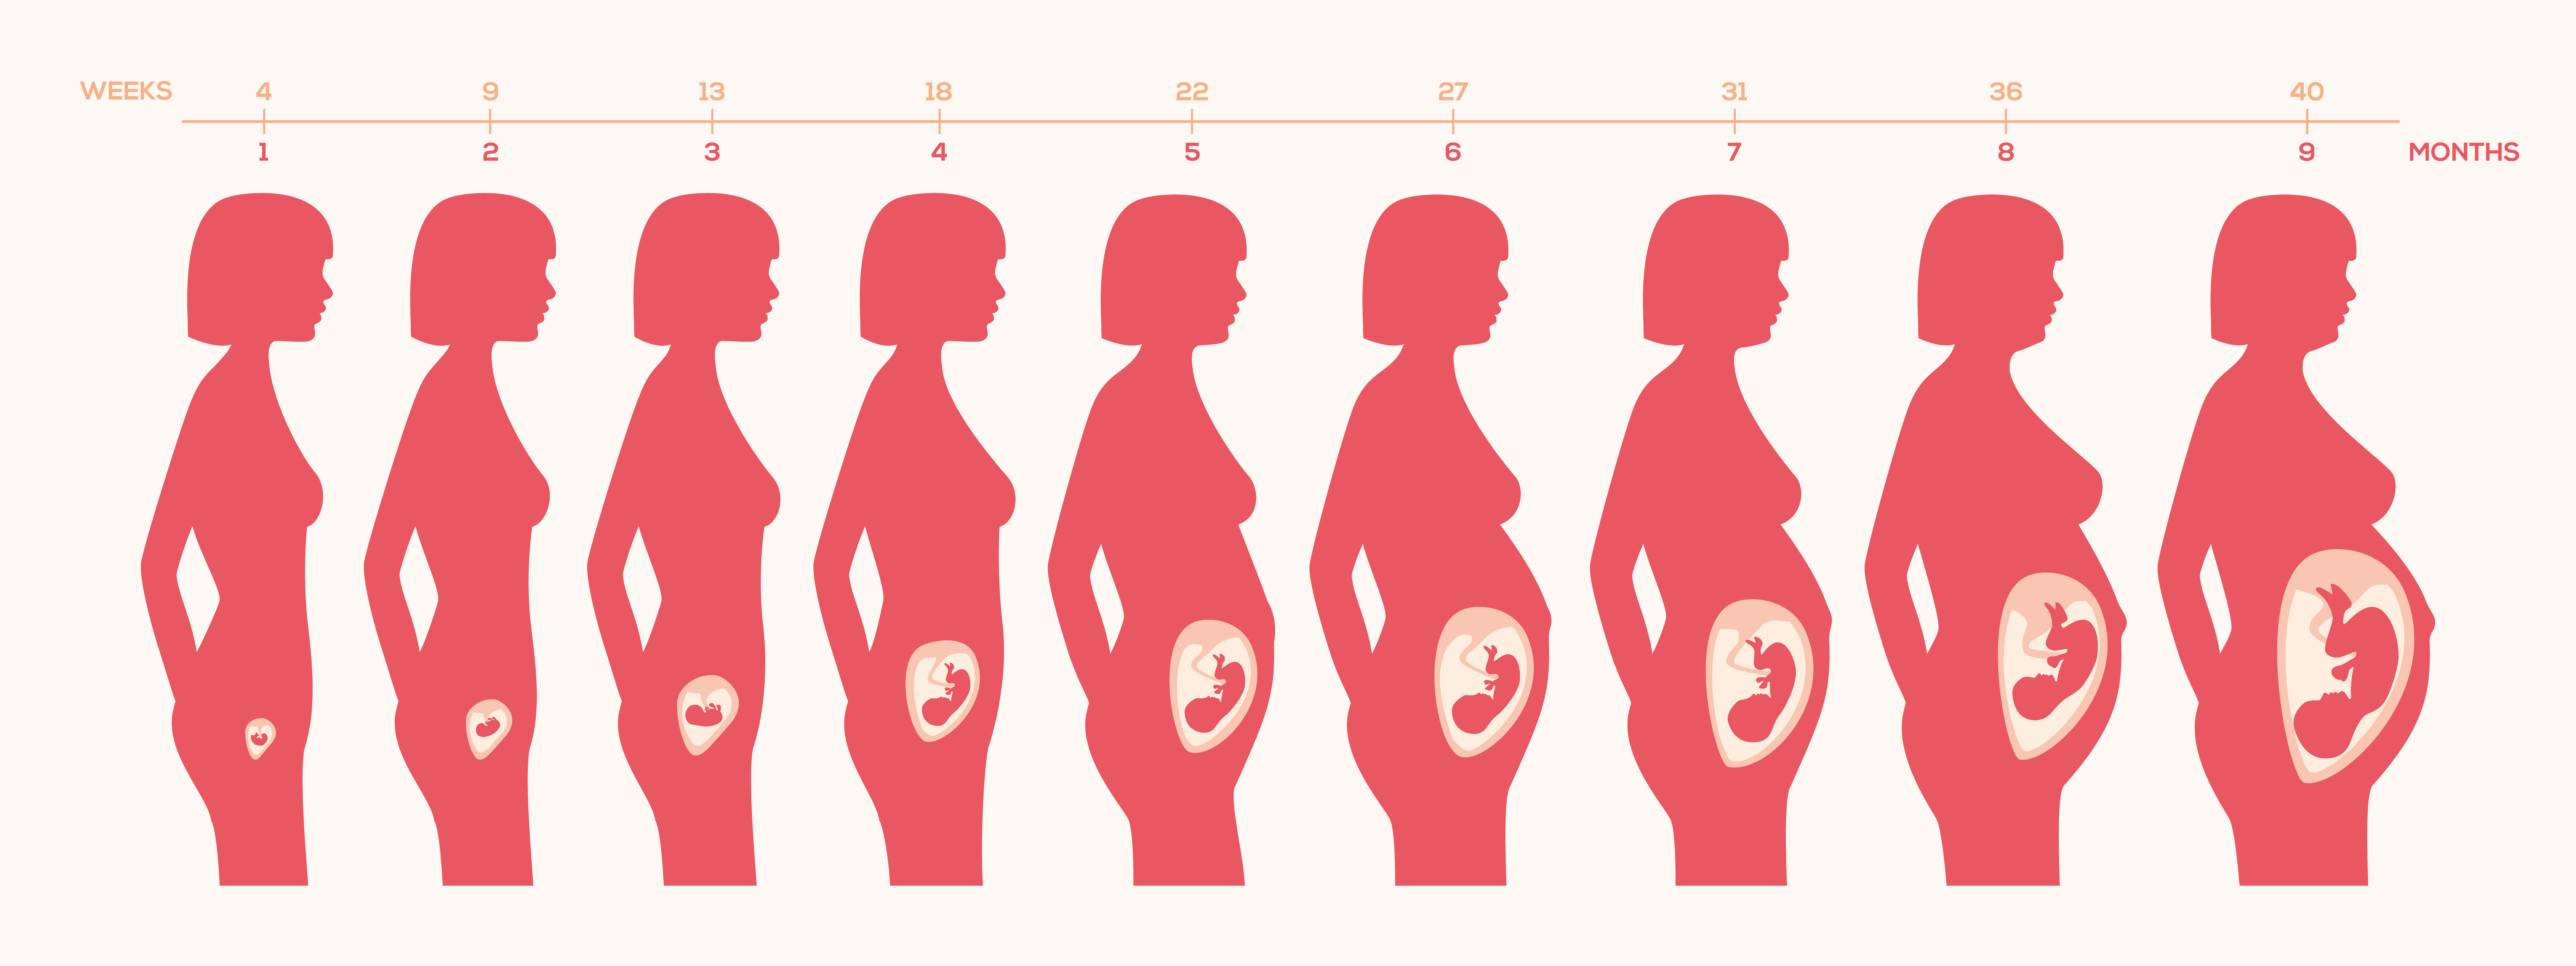 Беременна 1 месяц беременности. Этапы роста ребенка в утробе. Расположение ребенка в животе по неделям. Беременность на разных сроках. Расположение малыша в матке по неделям.